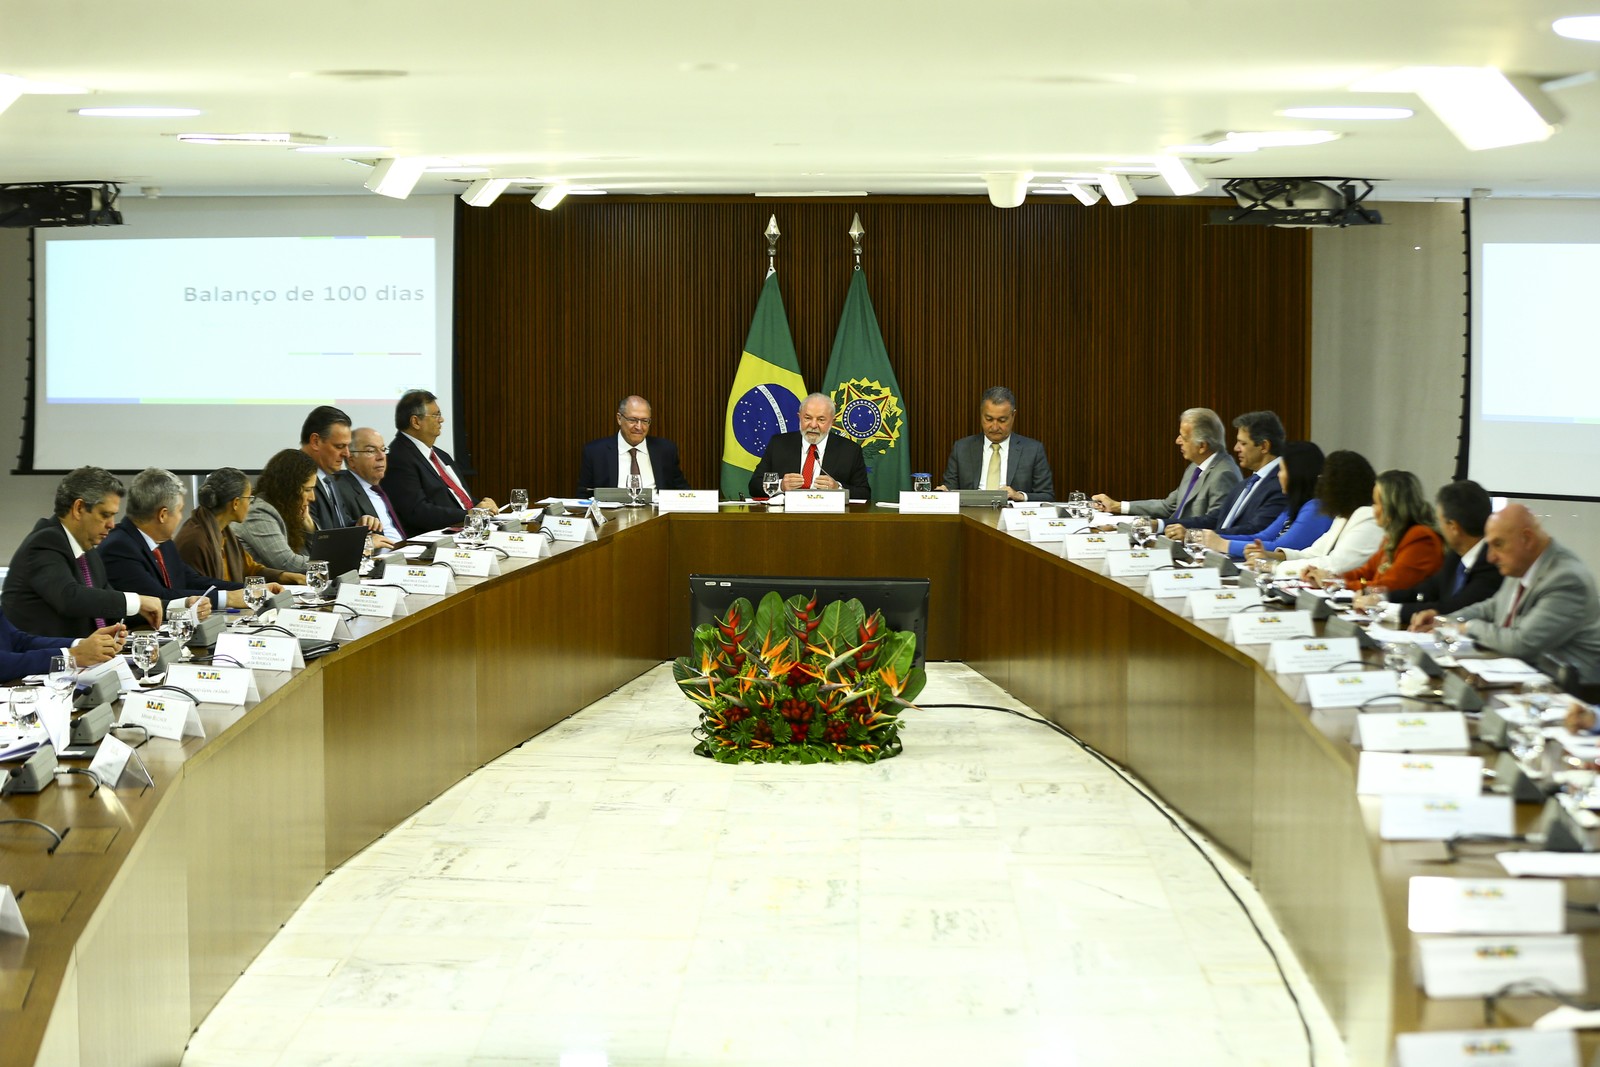 O presidente Lula e ministros fazem reunião de balanço de 100 dias de governo, no Palácio do Planalto, em 3 de abril — Foto: Marcelo Camargo/Agência Brasil